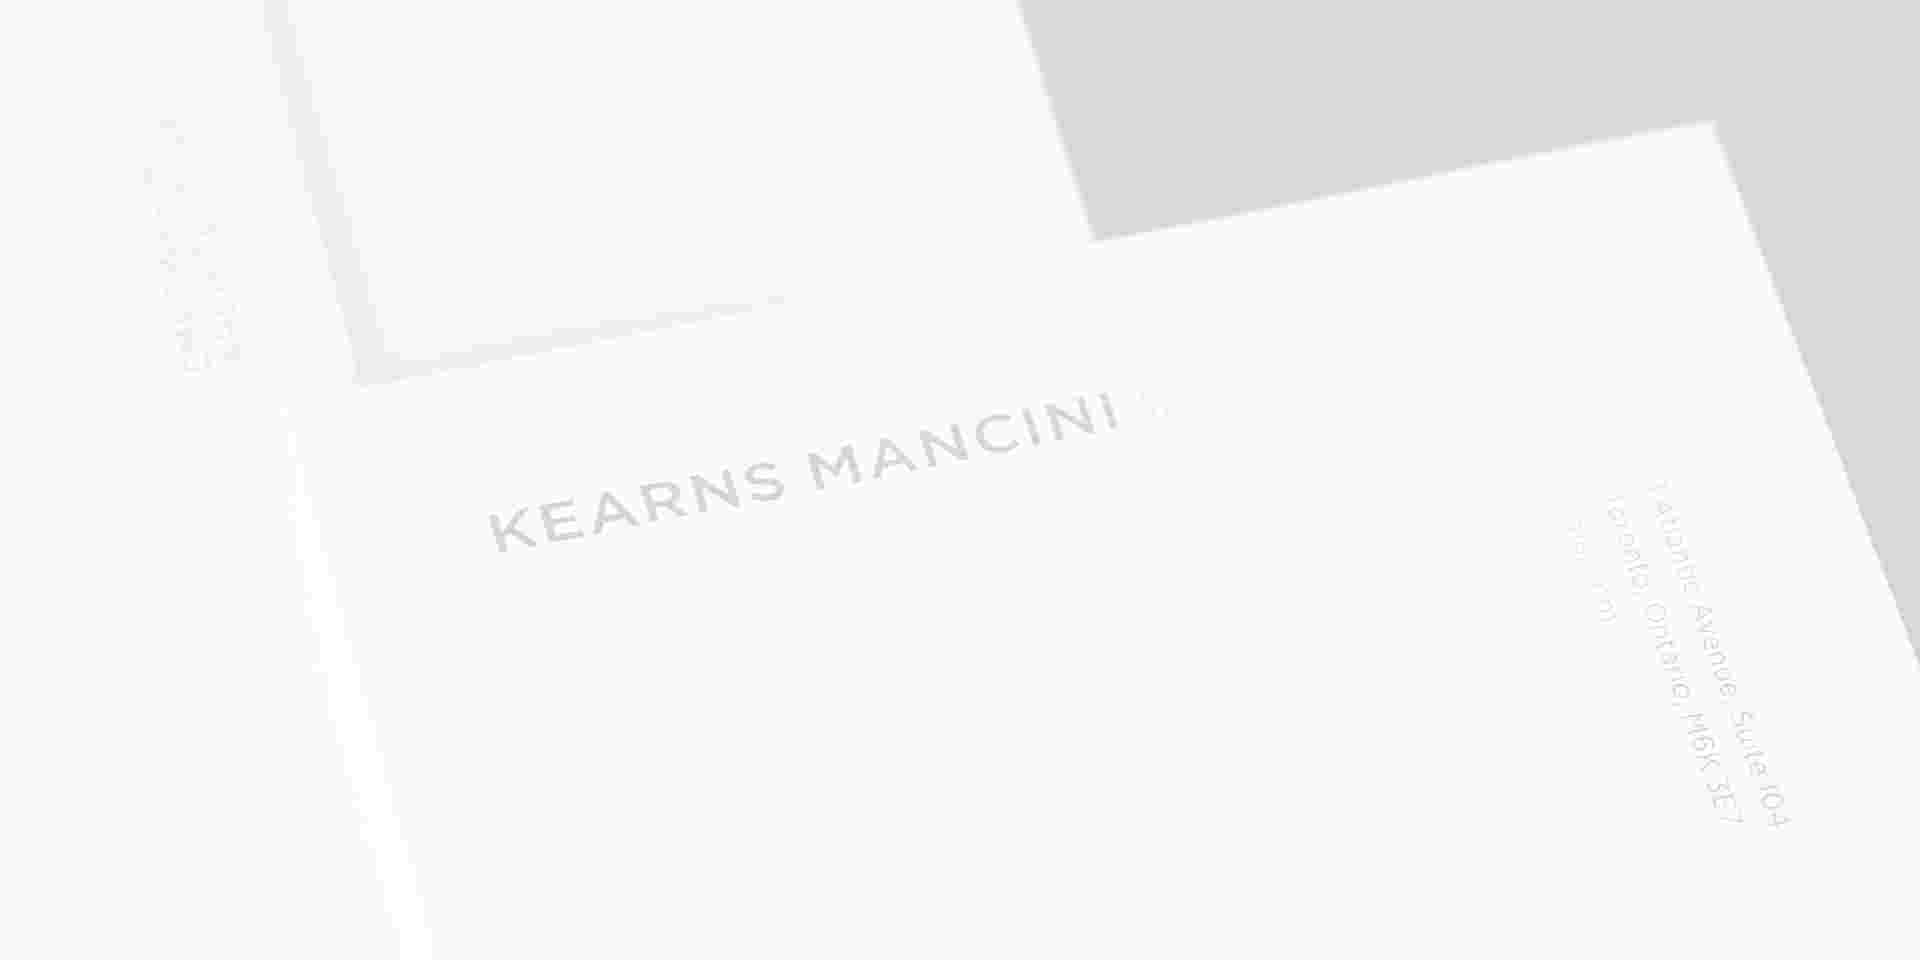 Kearns Mancini Architects - km_stationery-01